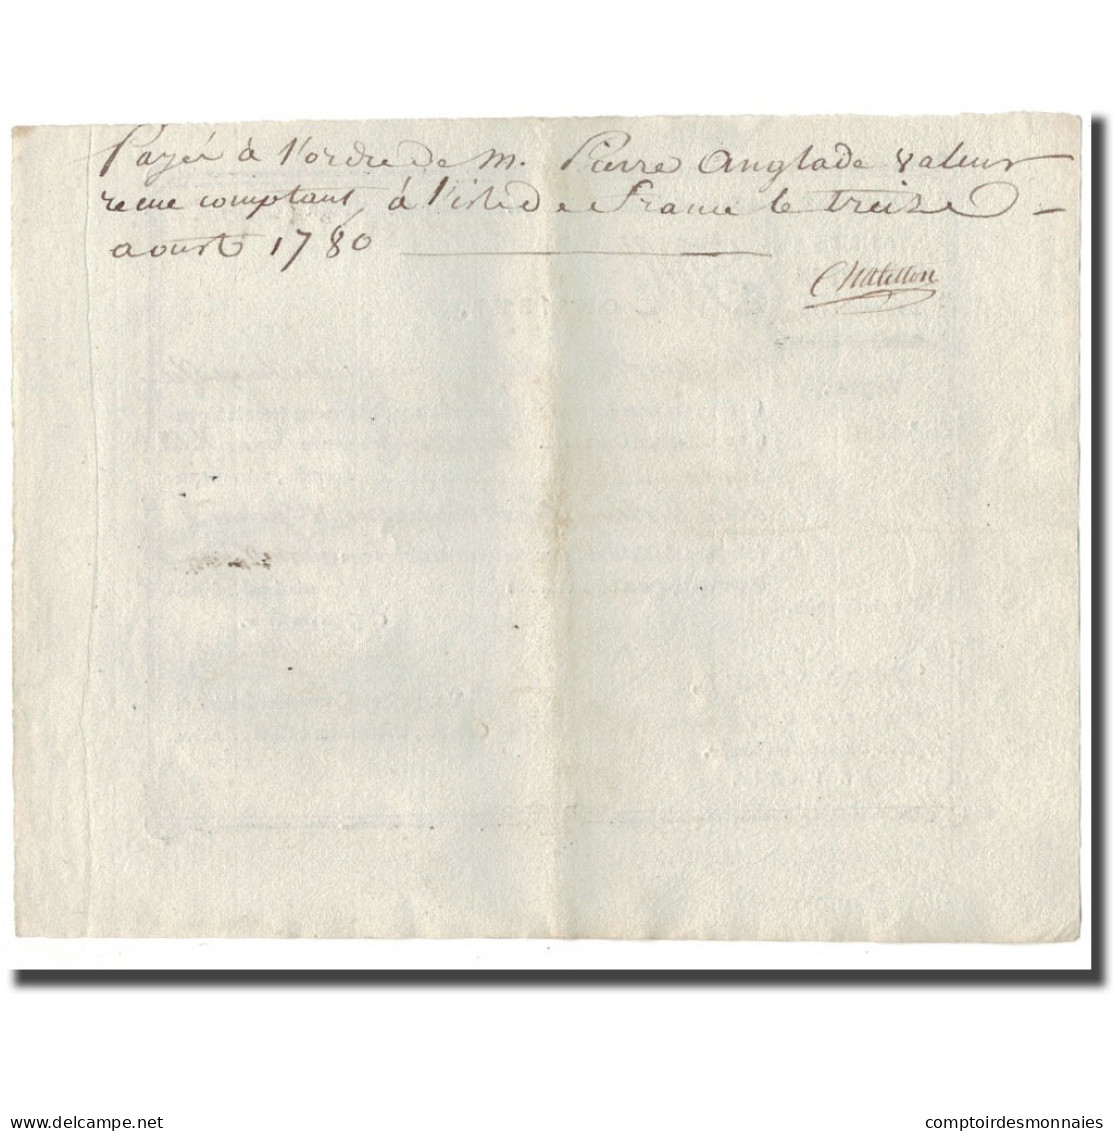 France, Traite, Colonies, Isle De Bourbon, 3000 Livres Tournois, 1780, SUP - ...-1889 Francs Im 19. Jh.